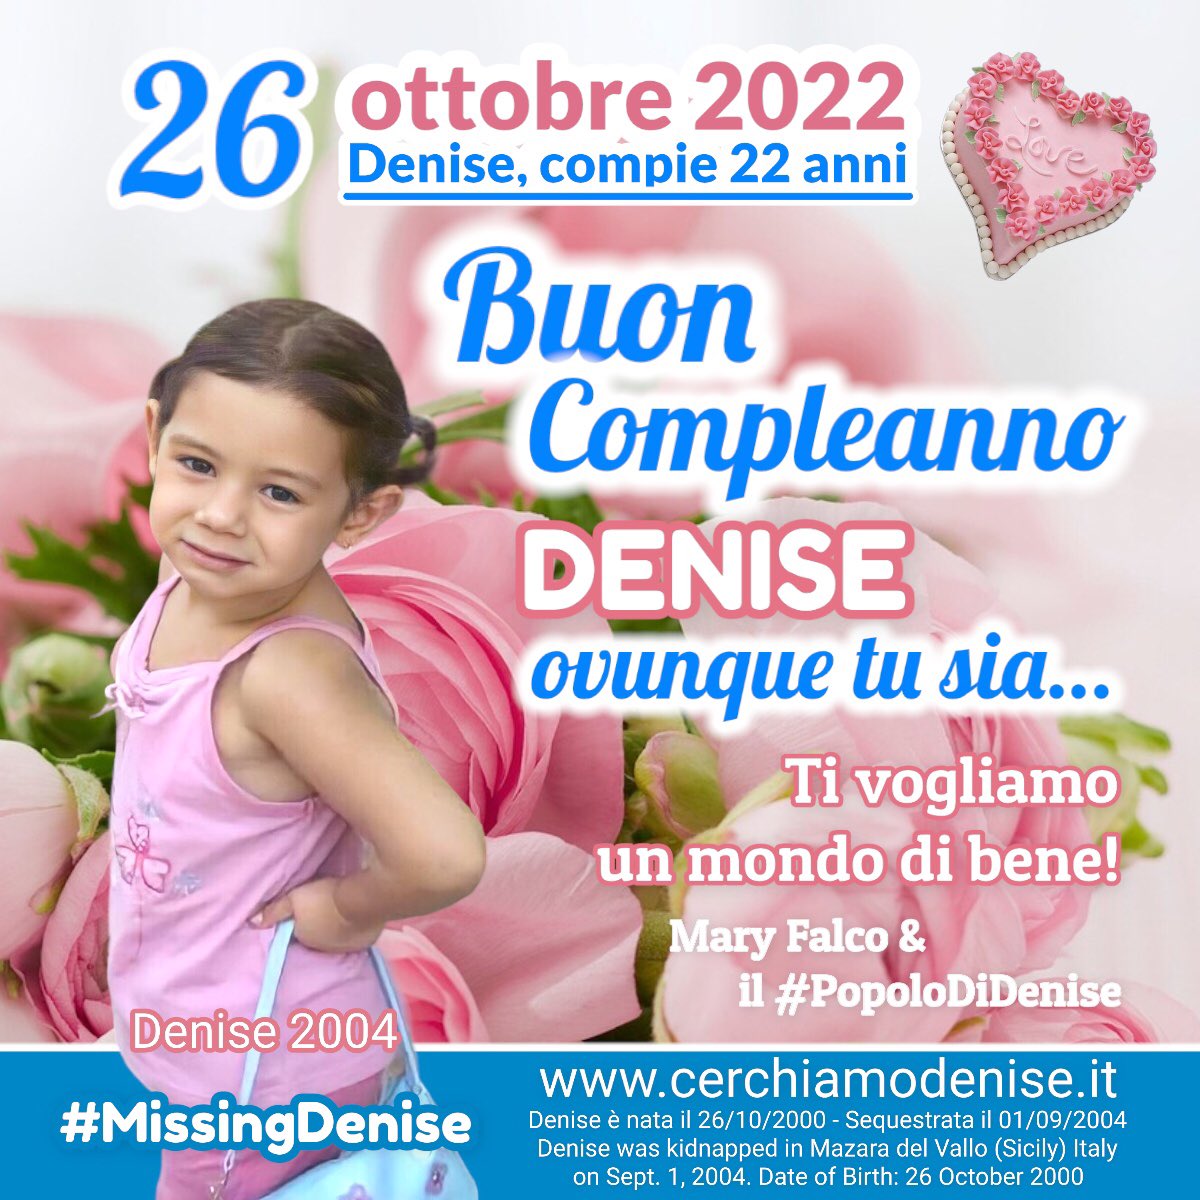 #26ottobre 🎂
Buon Compleanno #Denise ❤️
ovunque tu sia…
Ti vogliamo un mondo di bene❣️

Mary & 
il #PopolodiDenise 

cerchiamodenise.it

#Auguri #MissingDenise #Italia #Europe #world #sicilia